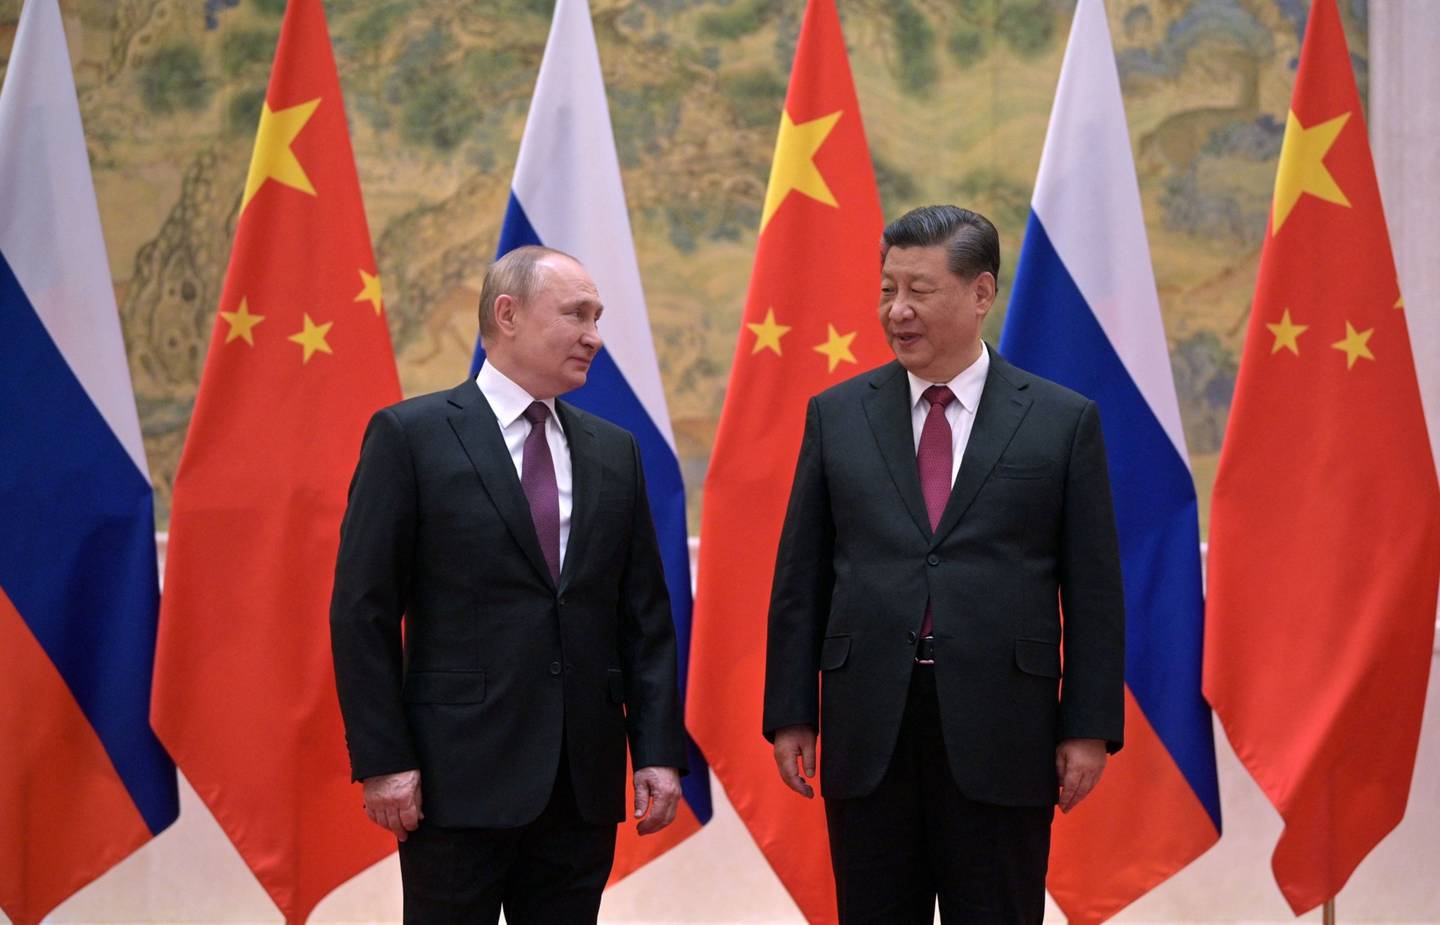 El presidente ruso Vladimir Putin (I) y el presidente chino Xi Jinping posan durante su reunión en Pekín, el 4 de febrero de 2022. Fotógrafo: Alexei Druzhinin